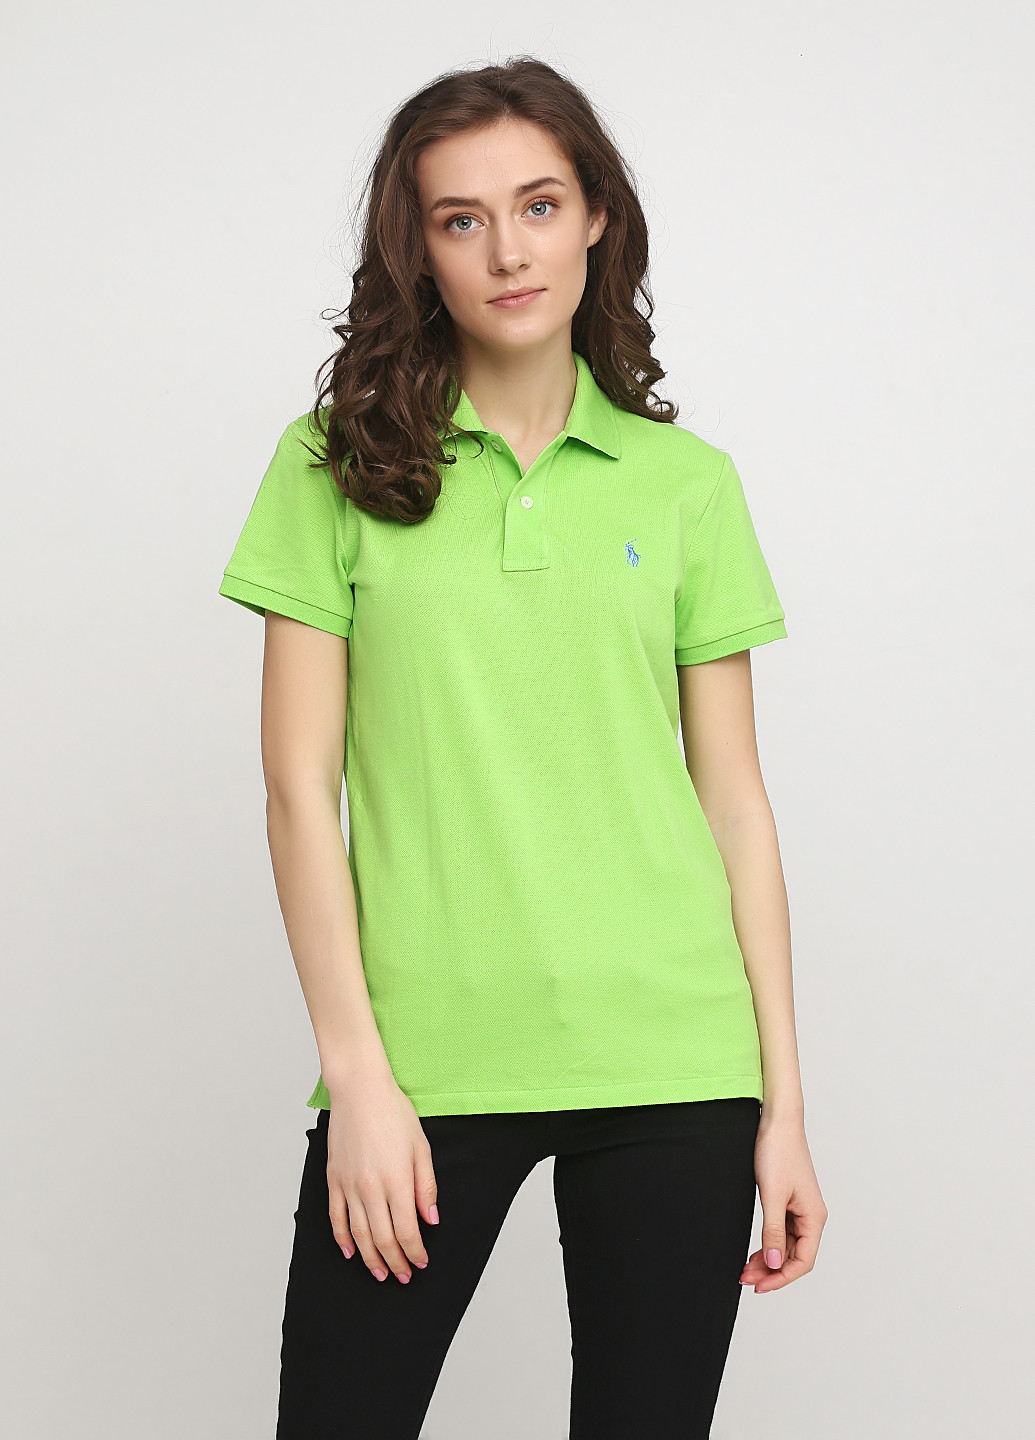 Салатовая женская футболка-поло Ralph Lauren с логотипом